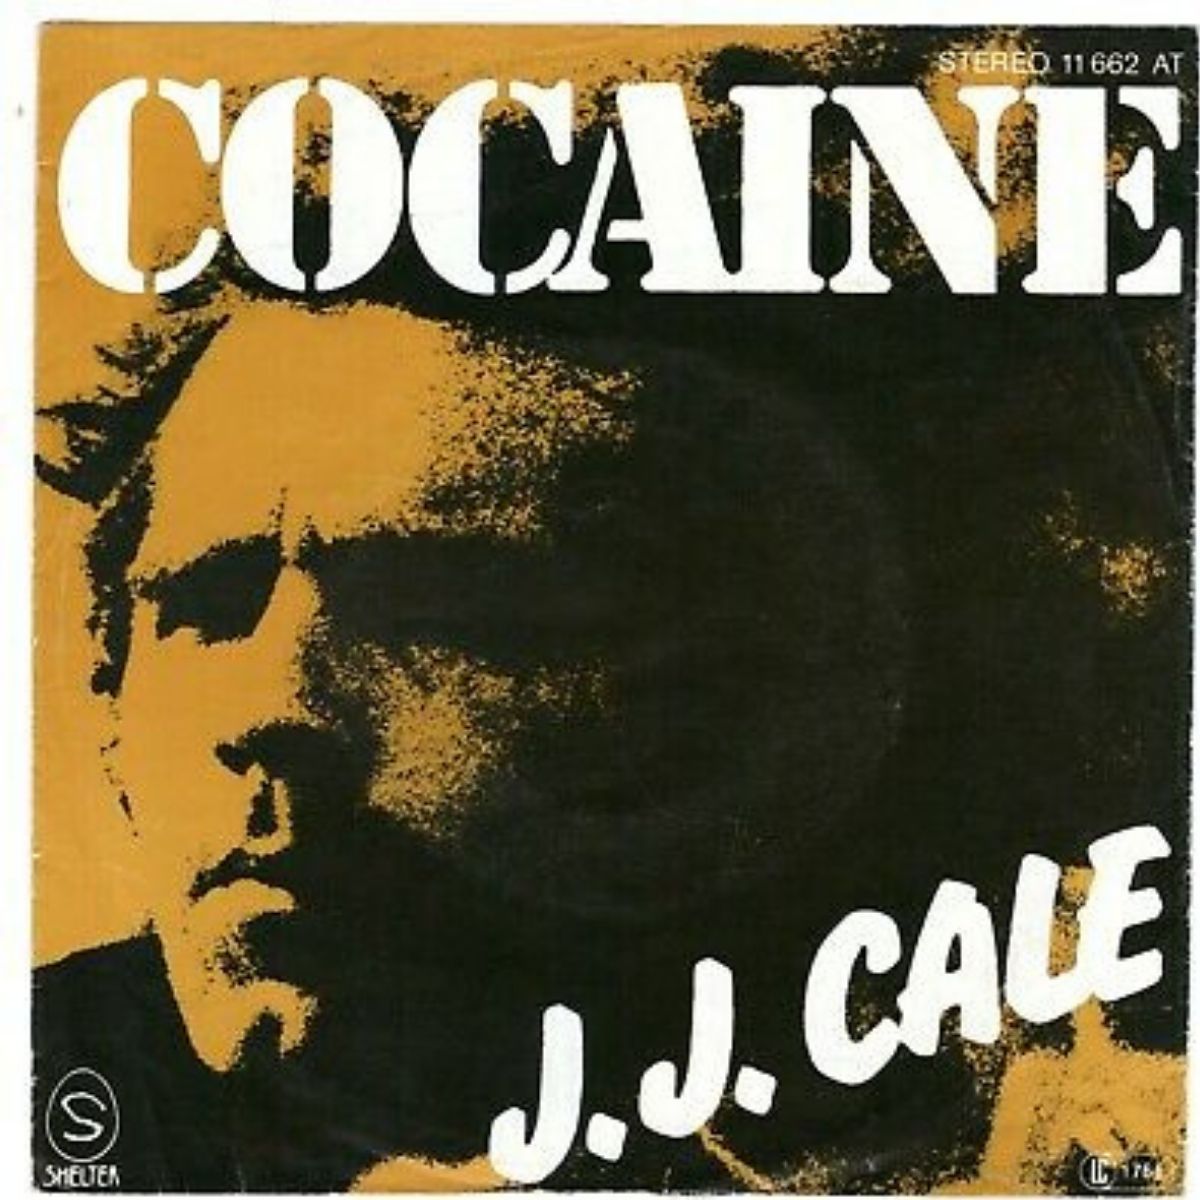 Reprise de la chanson "Cocaine" de J.J. Cale